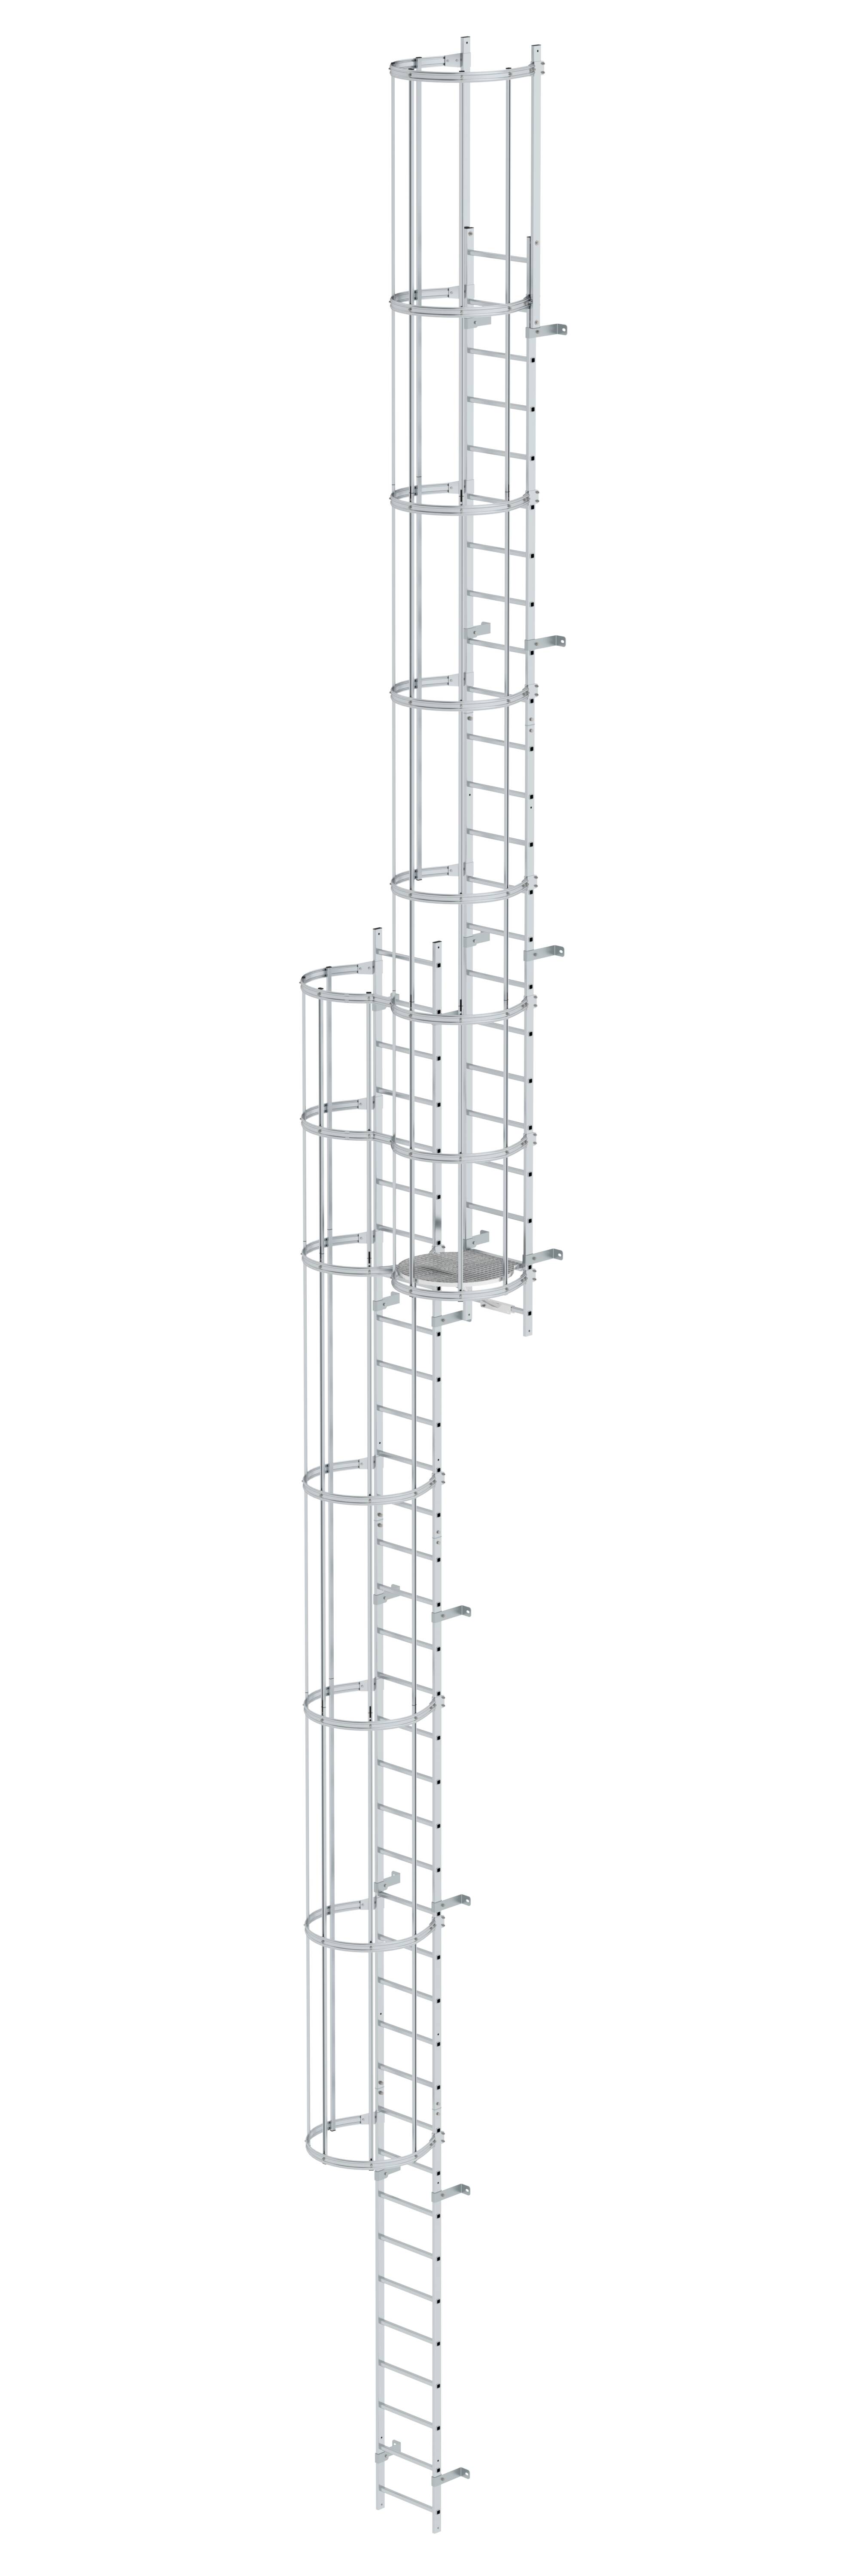 Mehrzügige Steigleiter mit Rückenschutz (Bau) Aluminium blank 15,48m